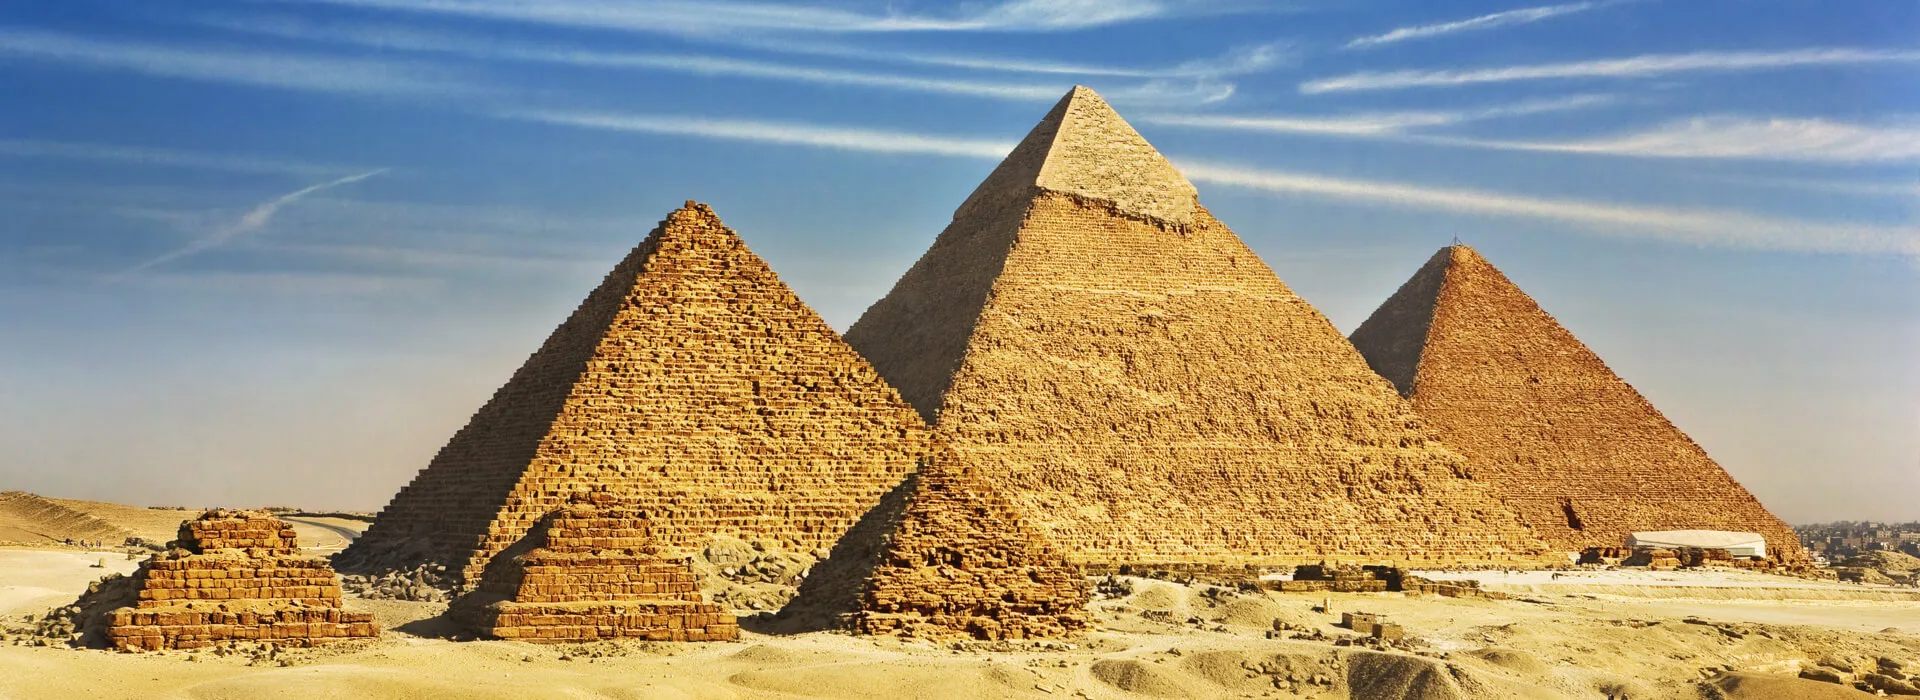 Urlaub in Ägypten background image